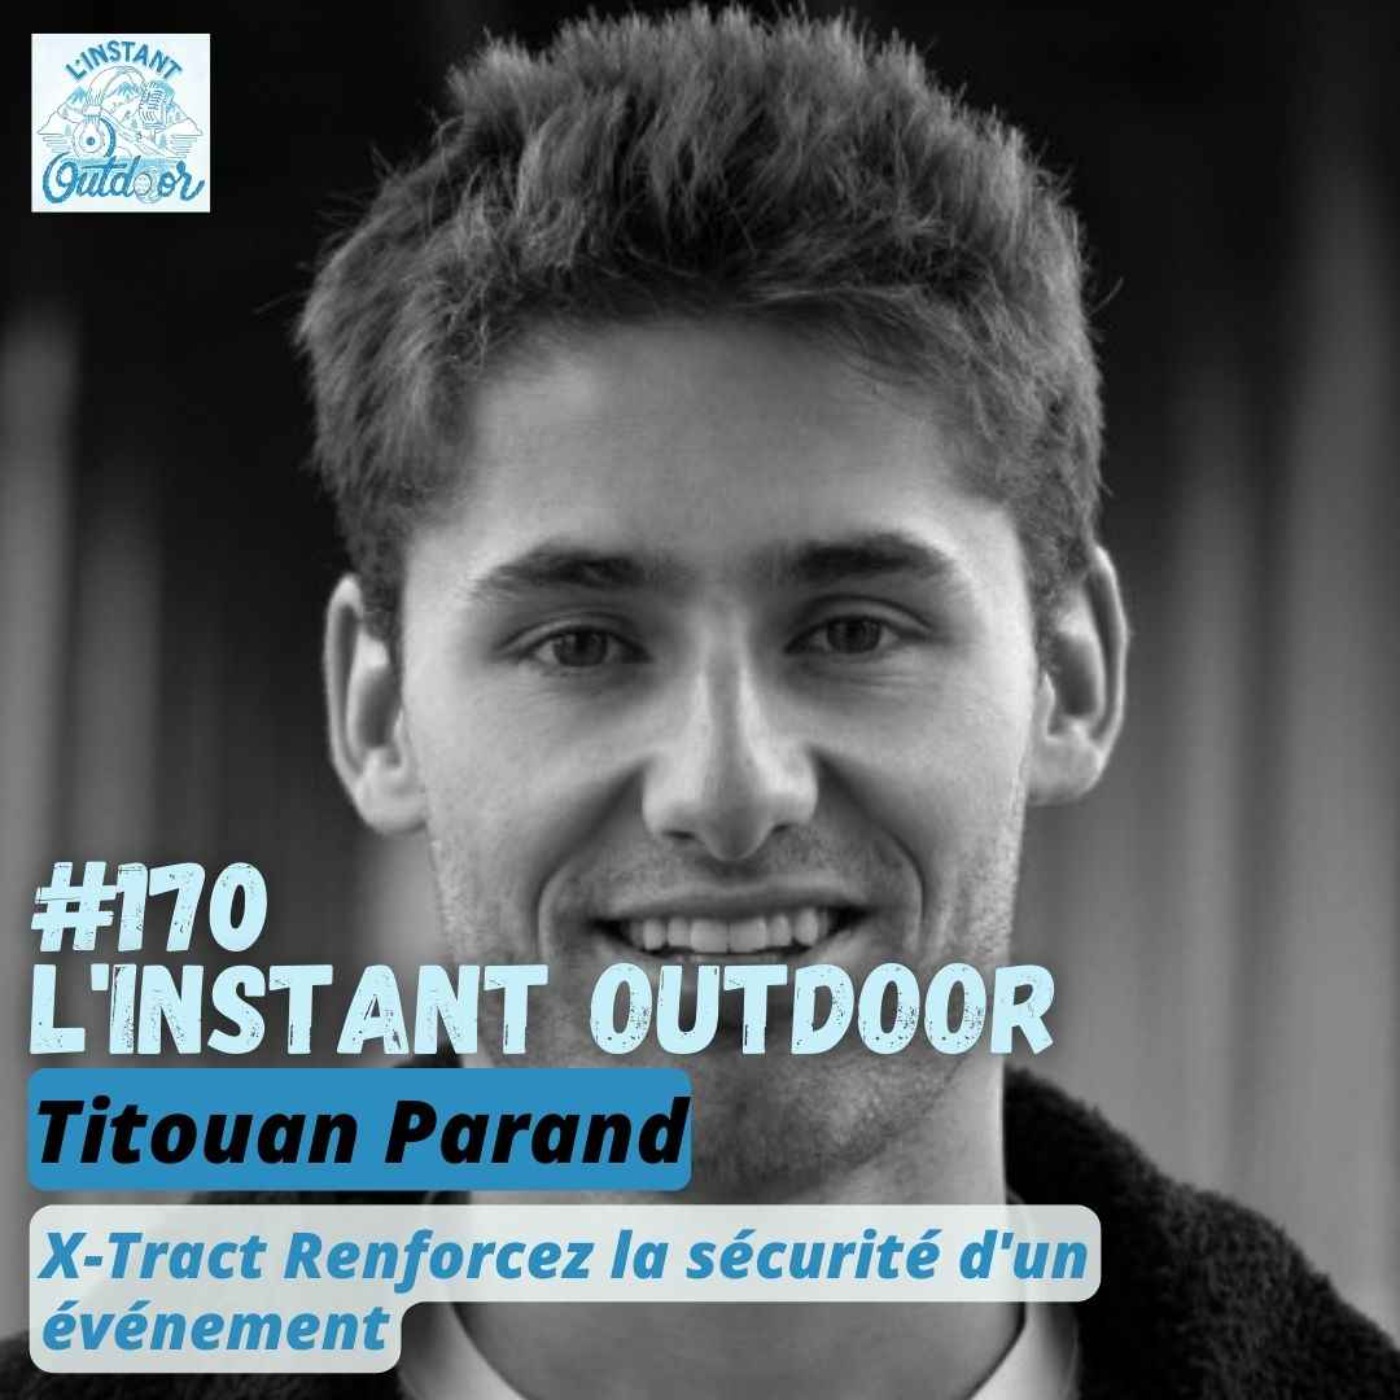 Titouan Parand - X-Tract Renforcez la sécurité d'un événement